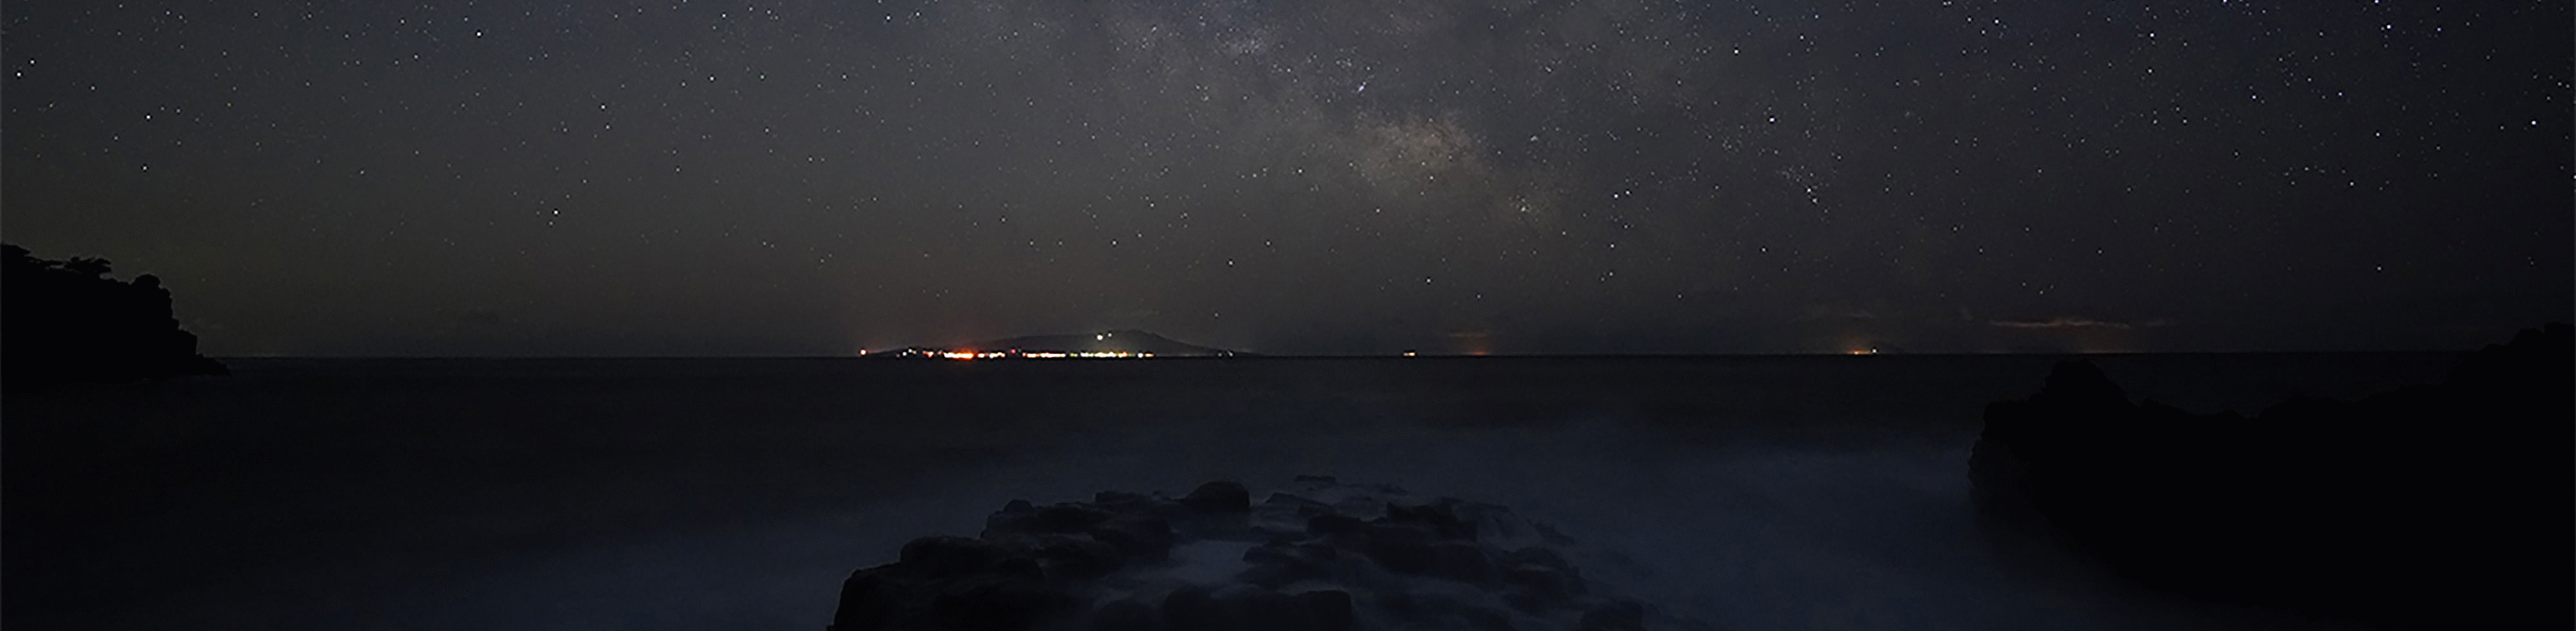 Deniz üzerinde Samanyolu’nu gösteren yıldız fotoğrafı